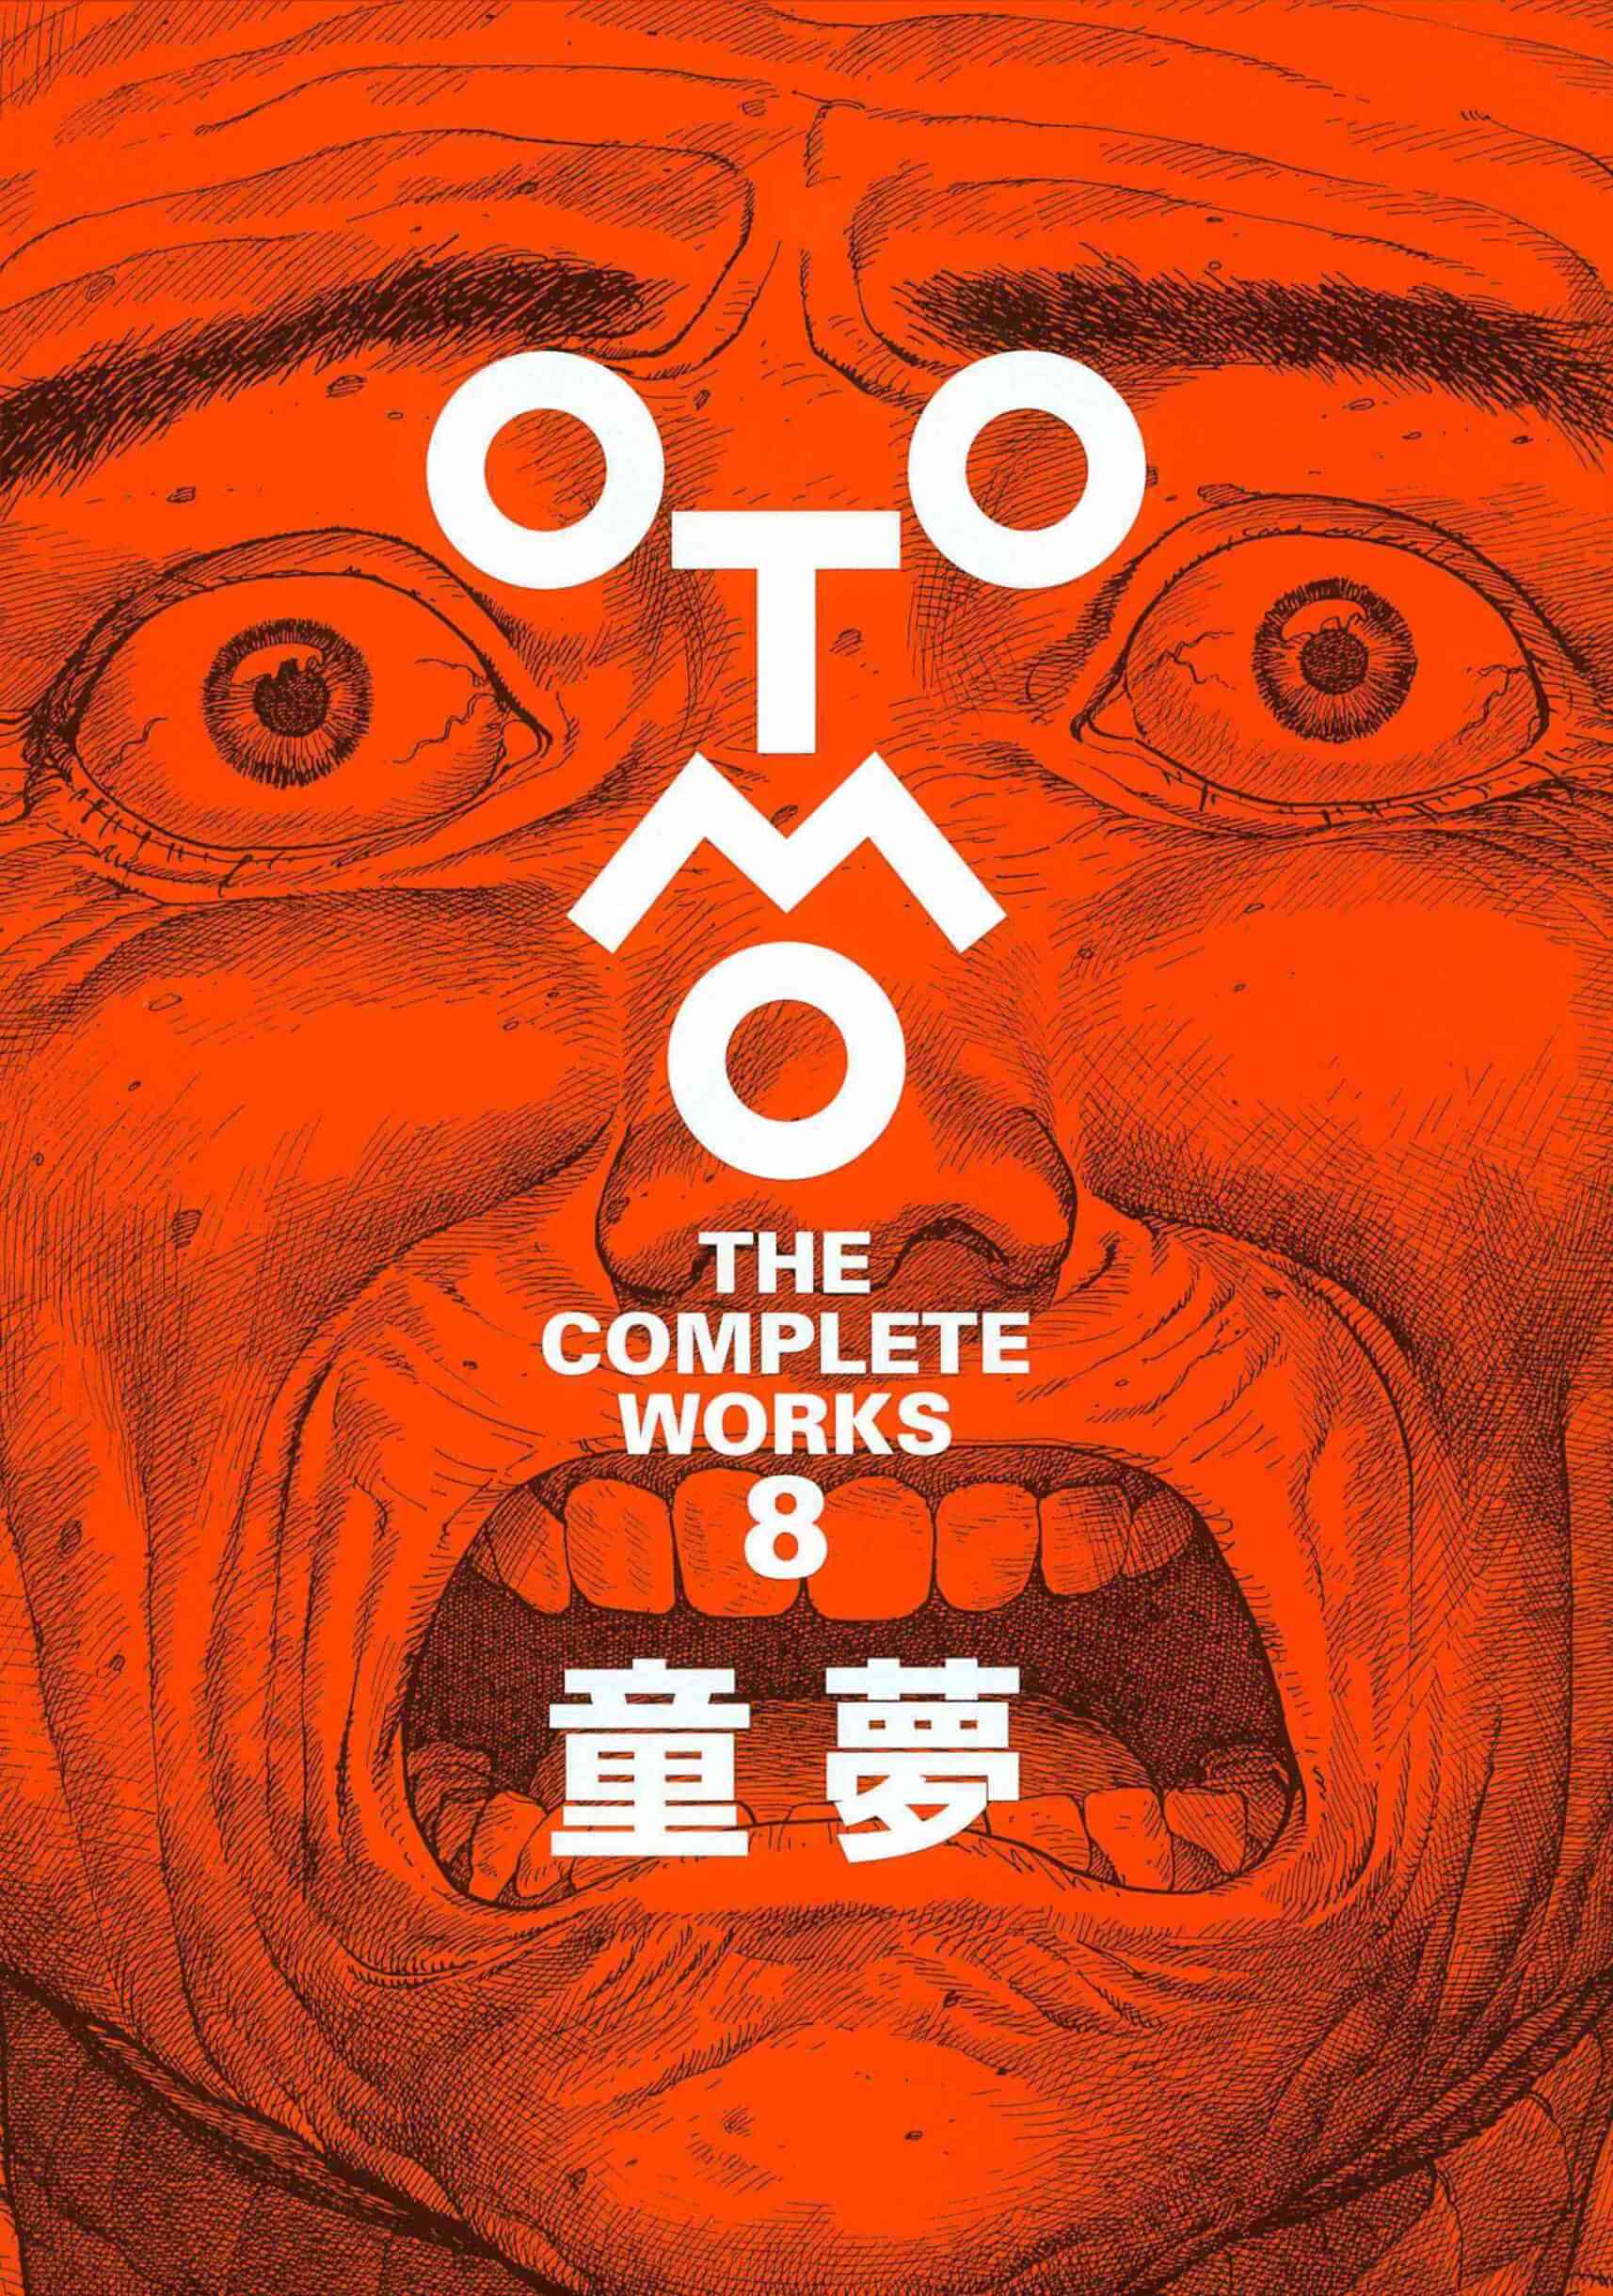 大友克洋全集『OTOMO THE COMPLETE WORKS』が2冊同時刊行開始！『童夢』、『AKIRA』のストーリーボードが登場 art220121_otomo-complete-02